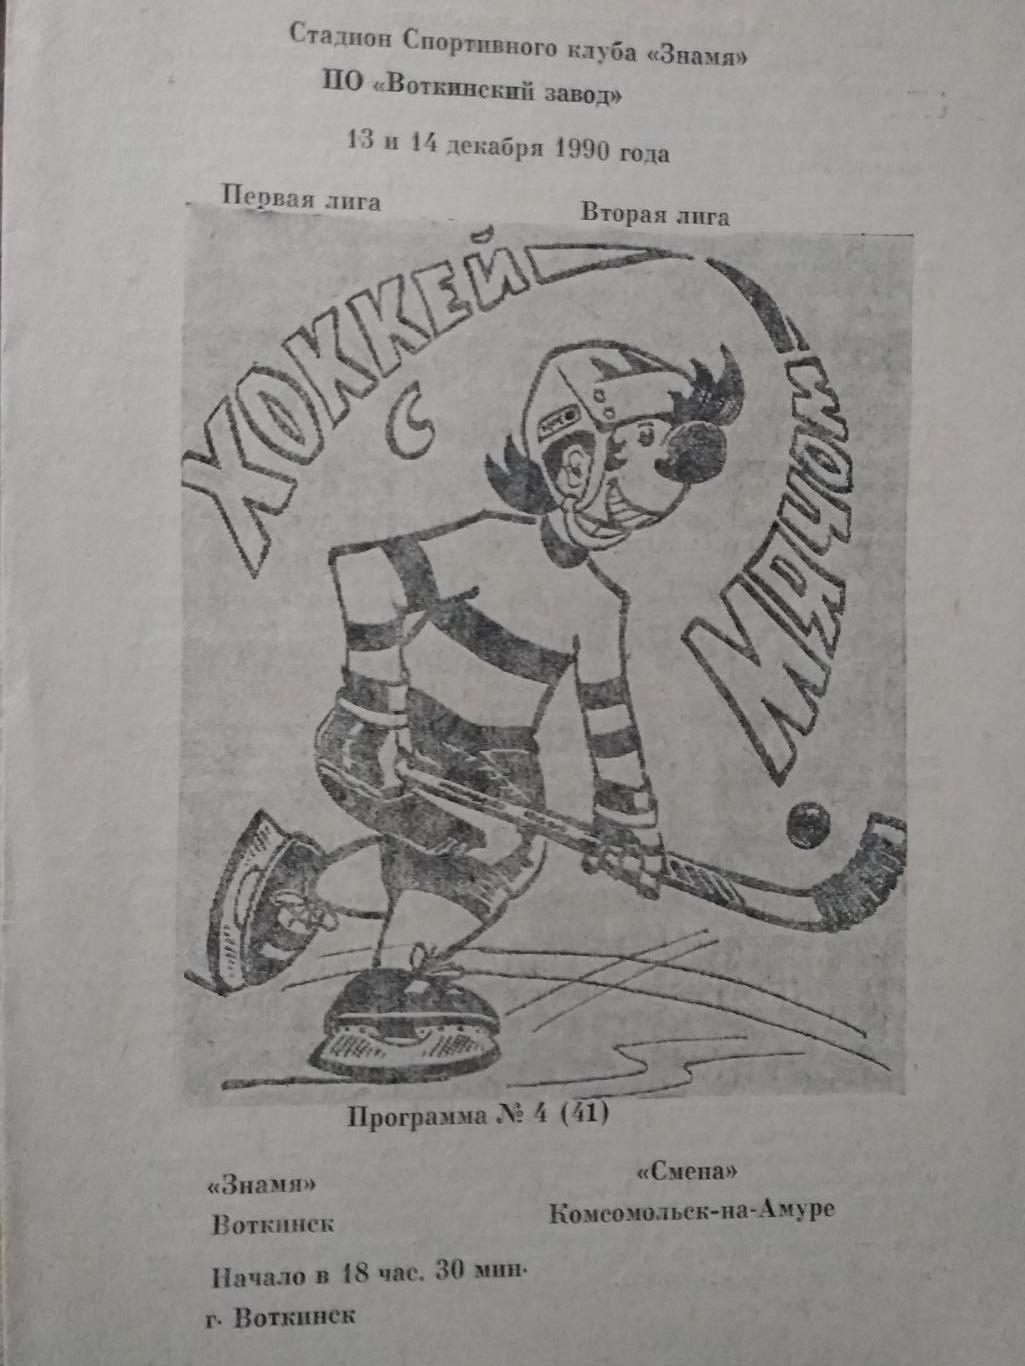 Знамя (Воткинск) - Смена (Комсомольск-на-Амуре). 13-14 декабря 1990.